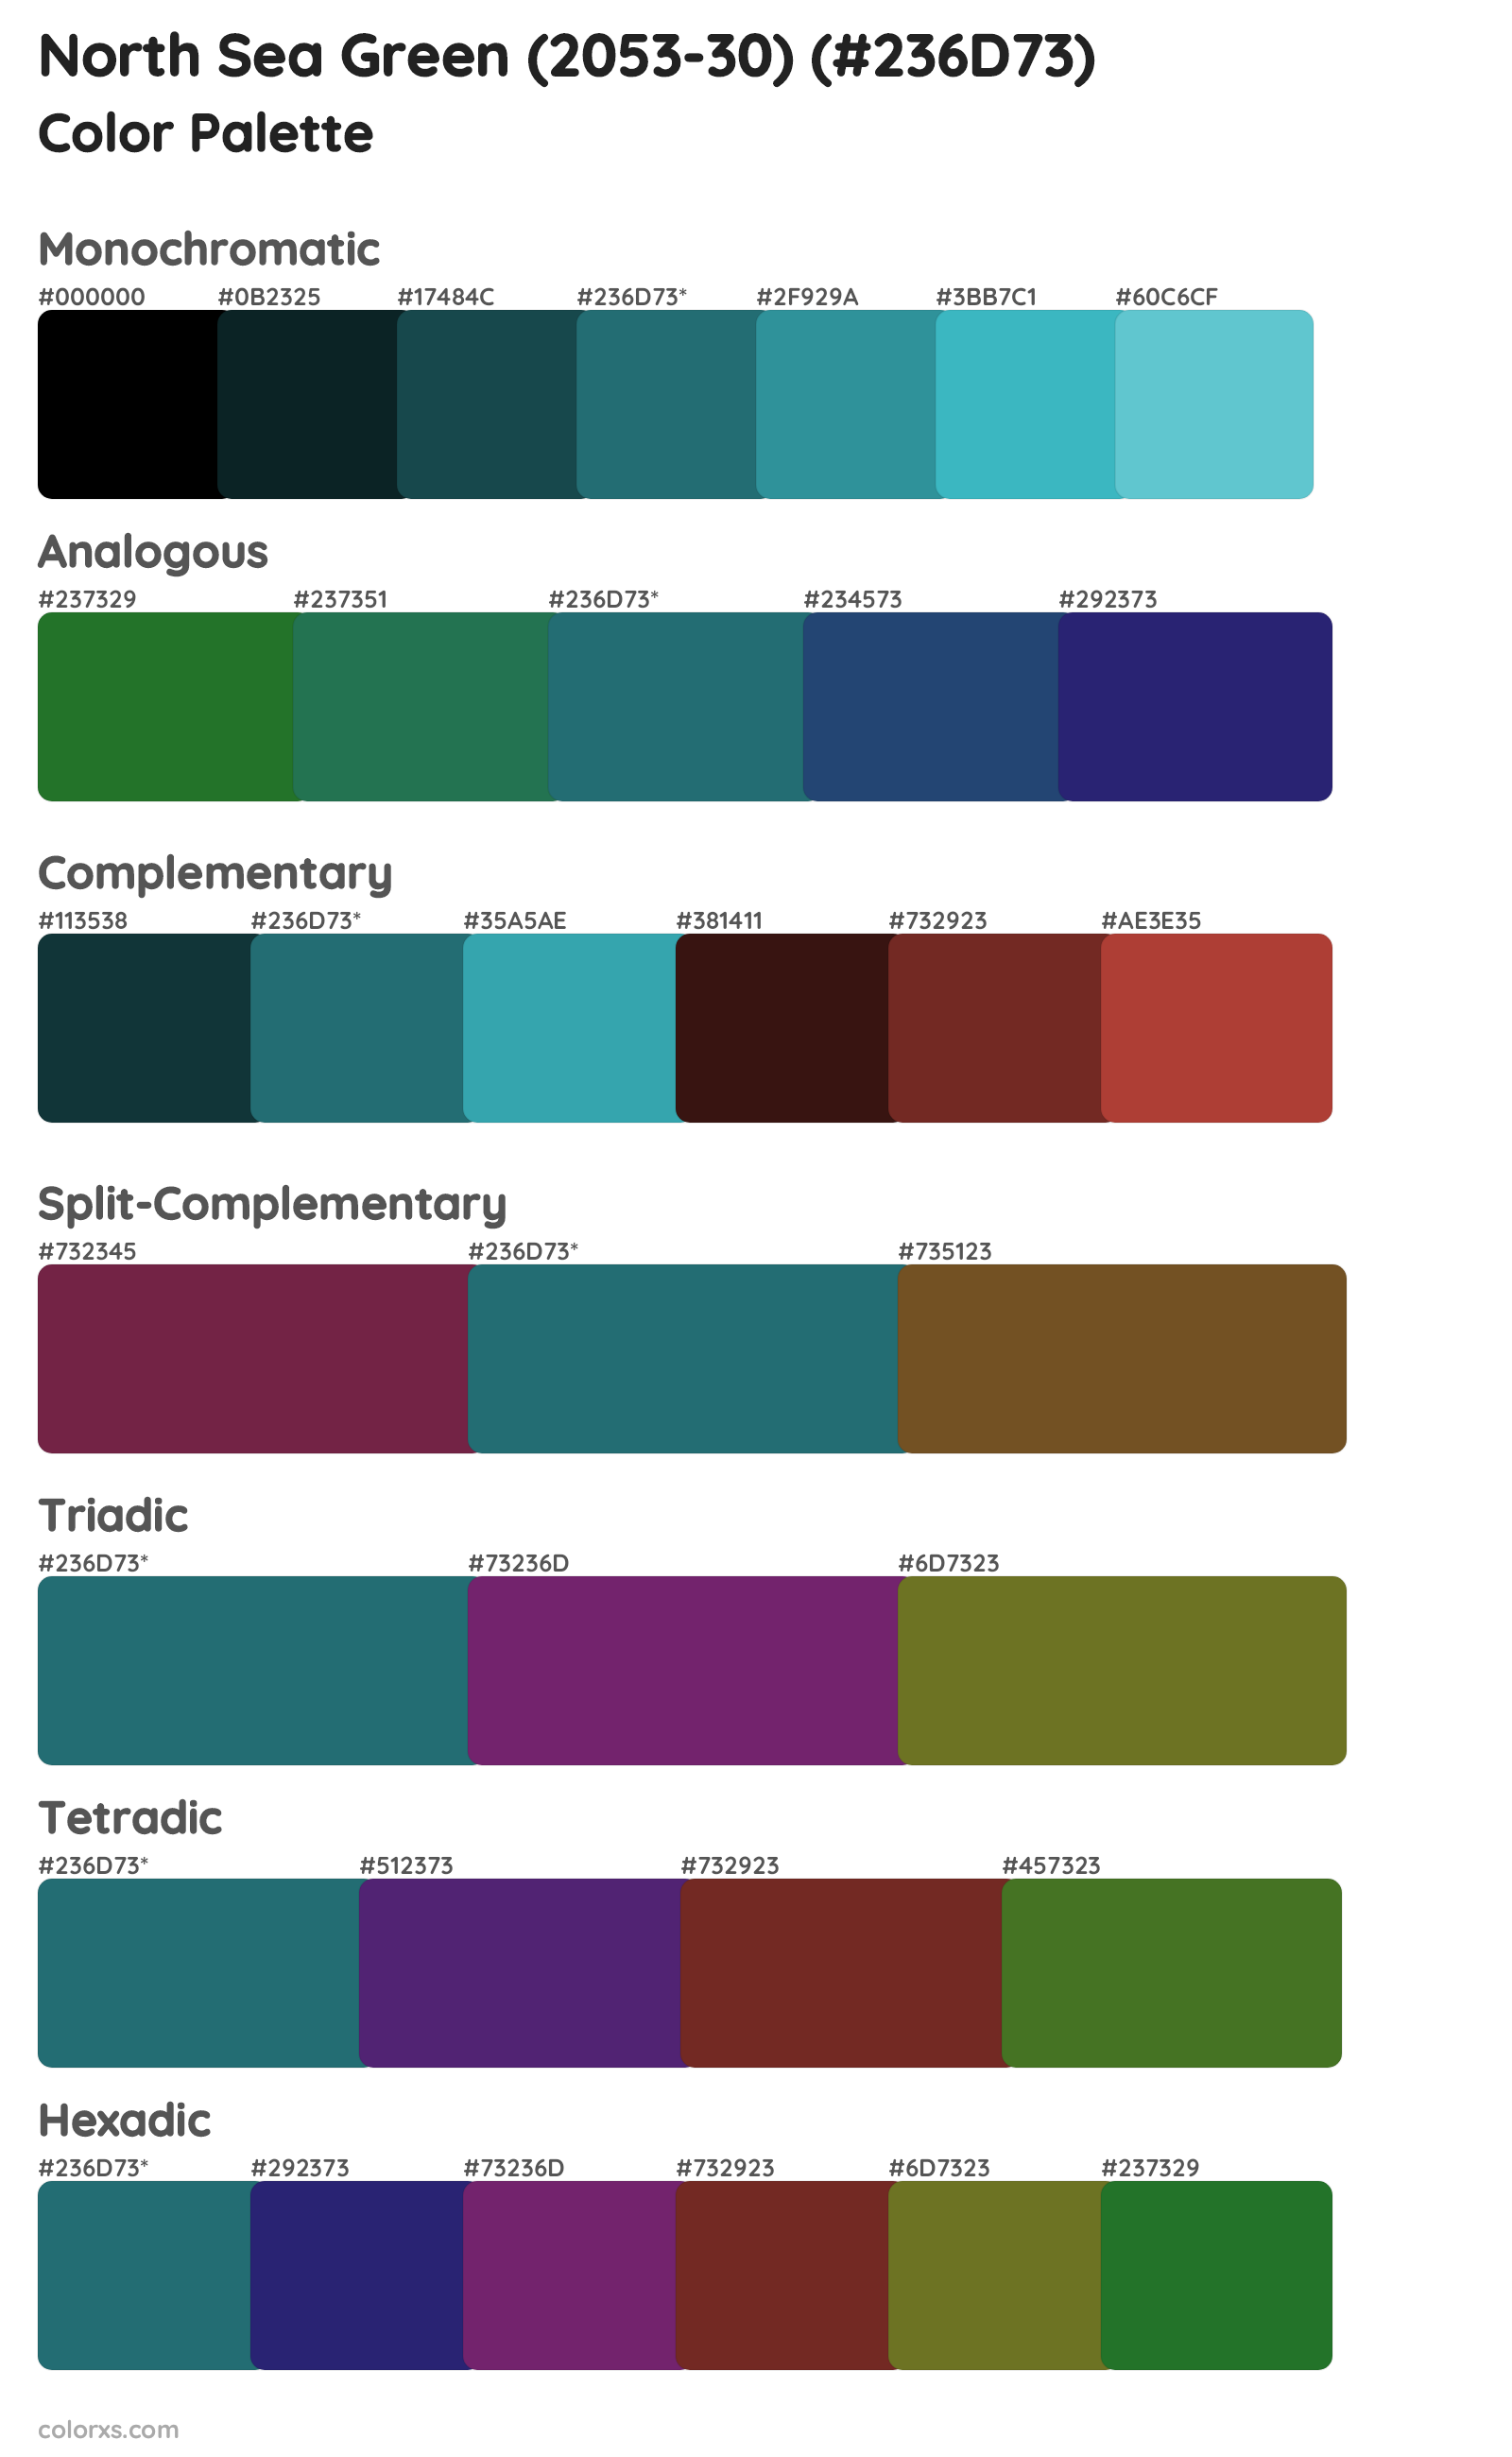 North Sea Green (2053-30) Color Scheme Palettes